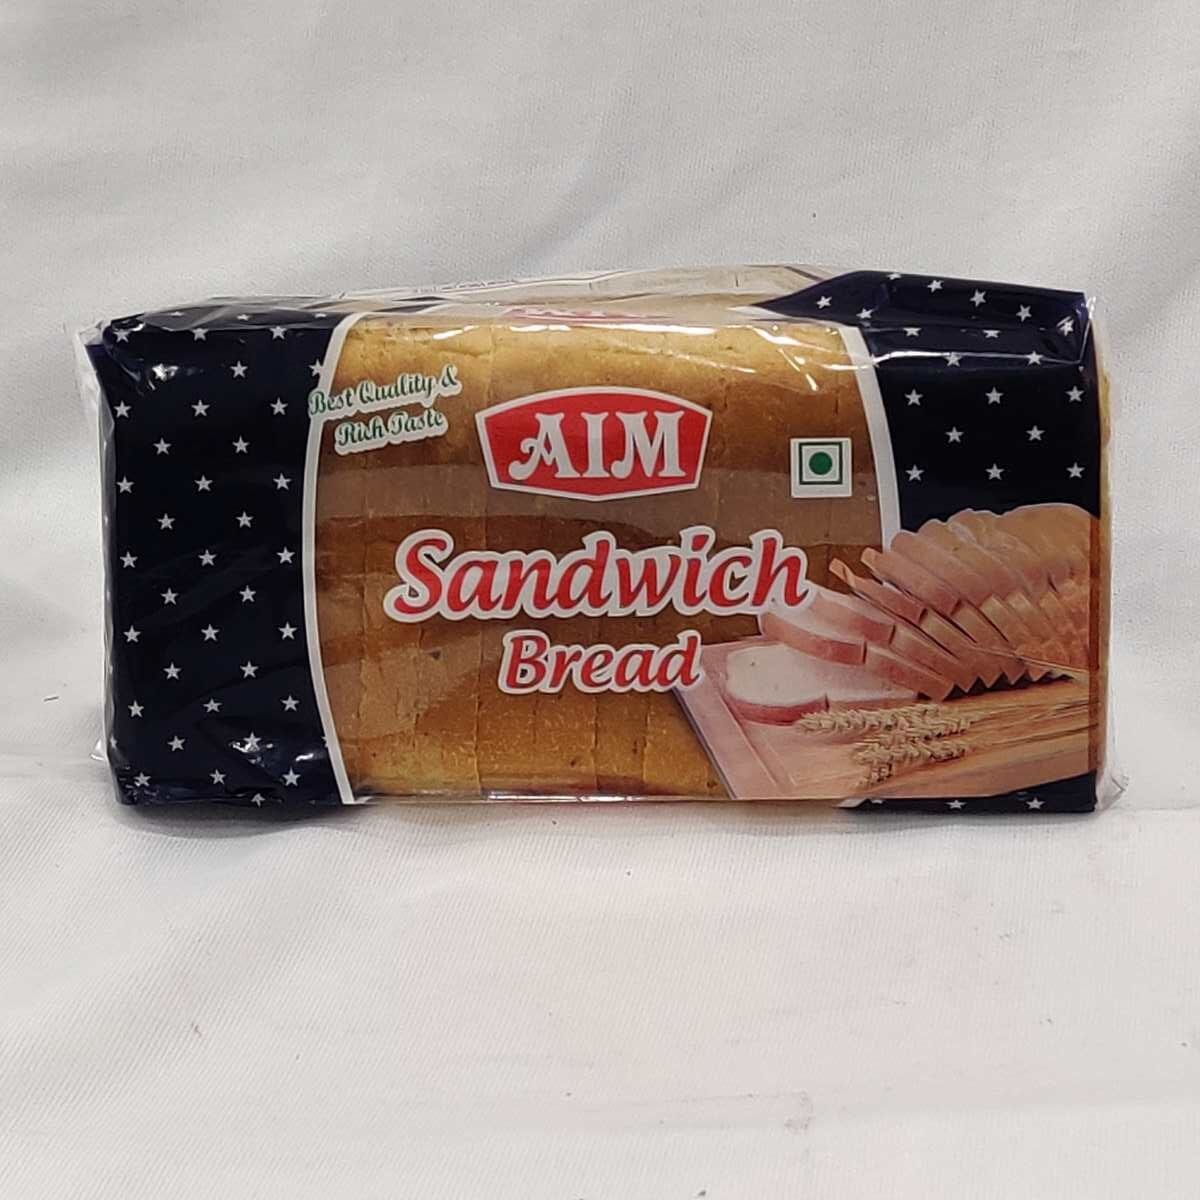 Aim sandwich bread 300gram,